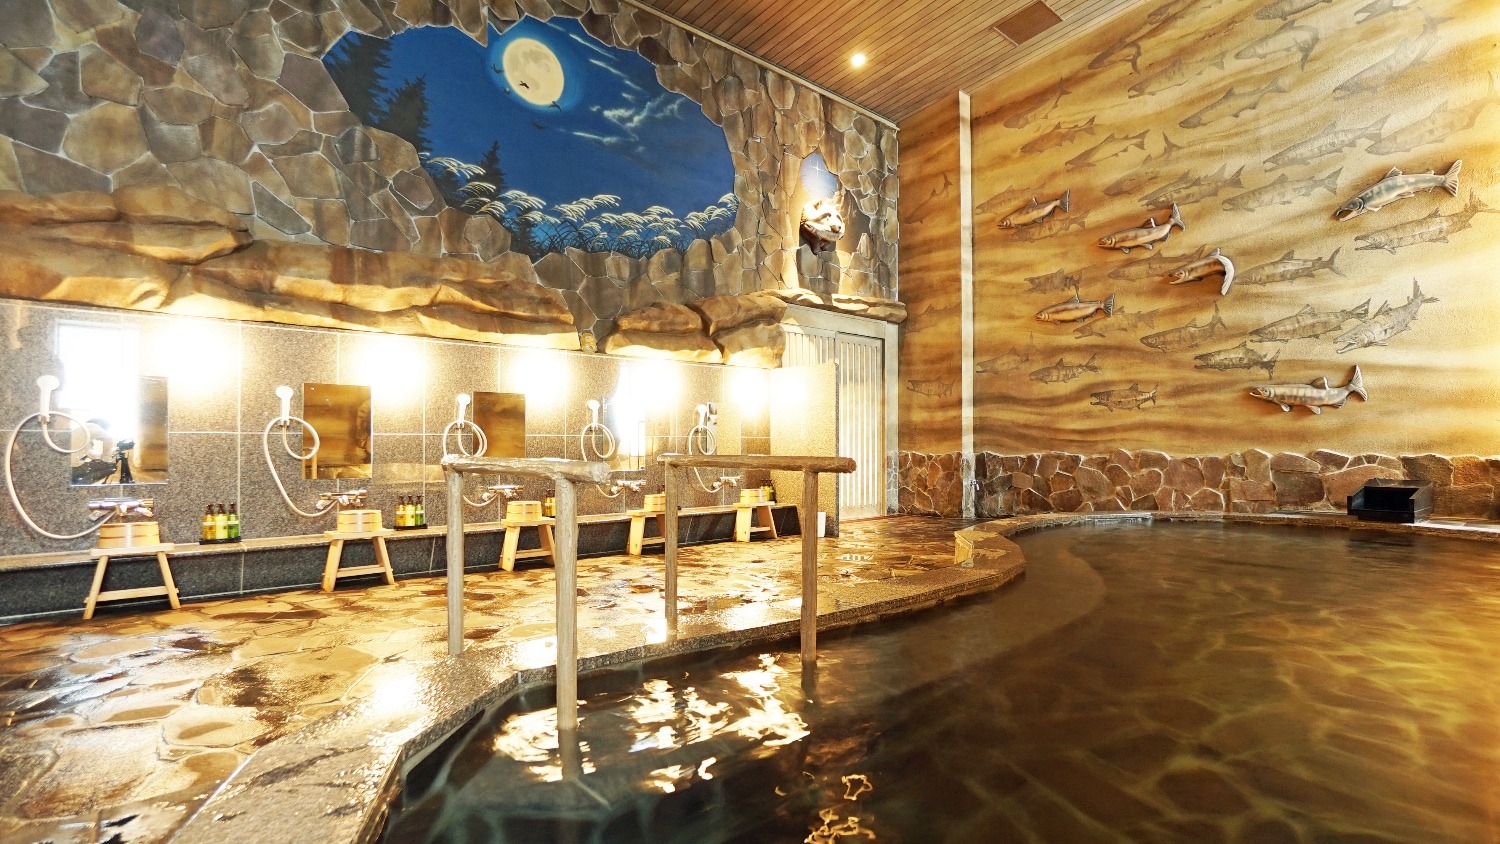 Natural hot spring "Pon no Yu" (5th floor)